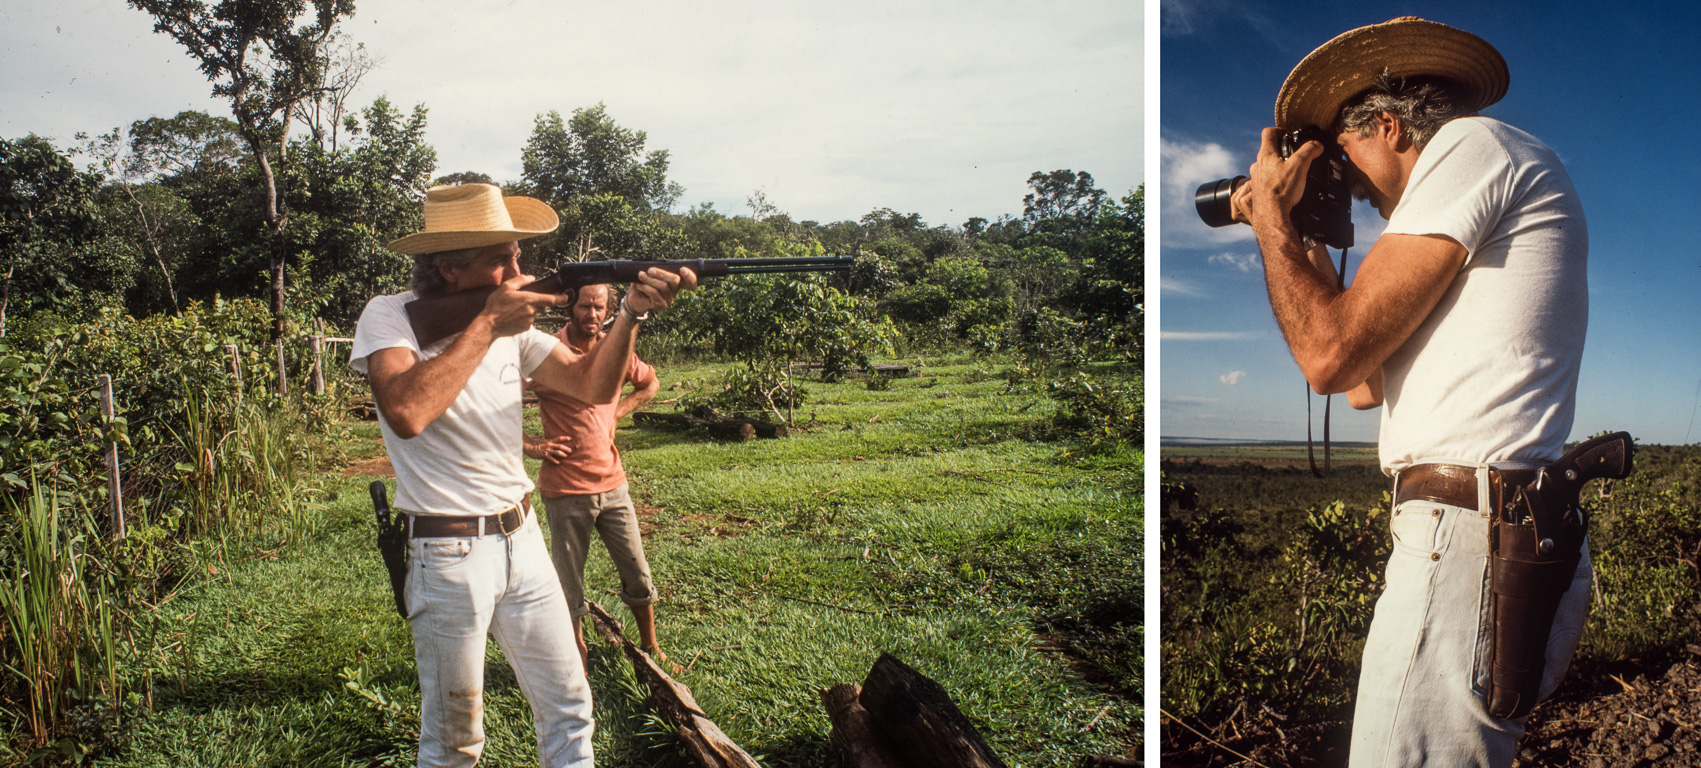 VSD. Mato-Grosso du Nord au Brésil. Concours de tir avec un Robinson Crusoe local.